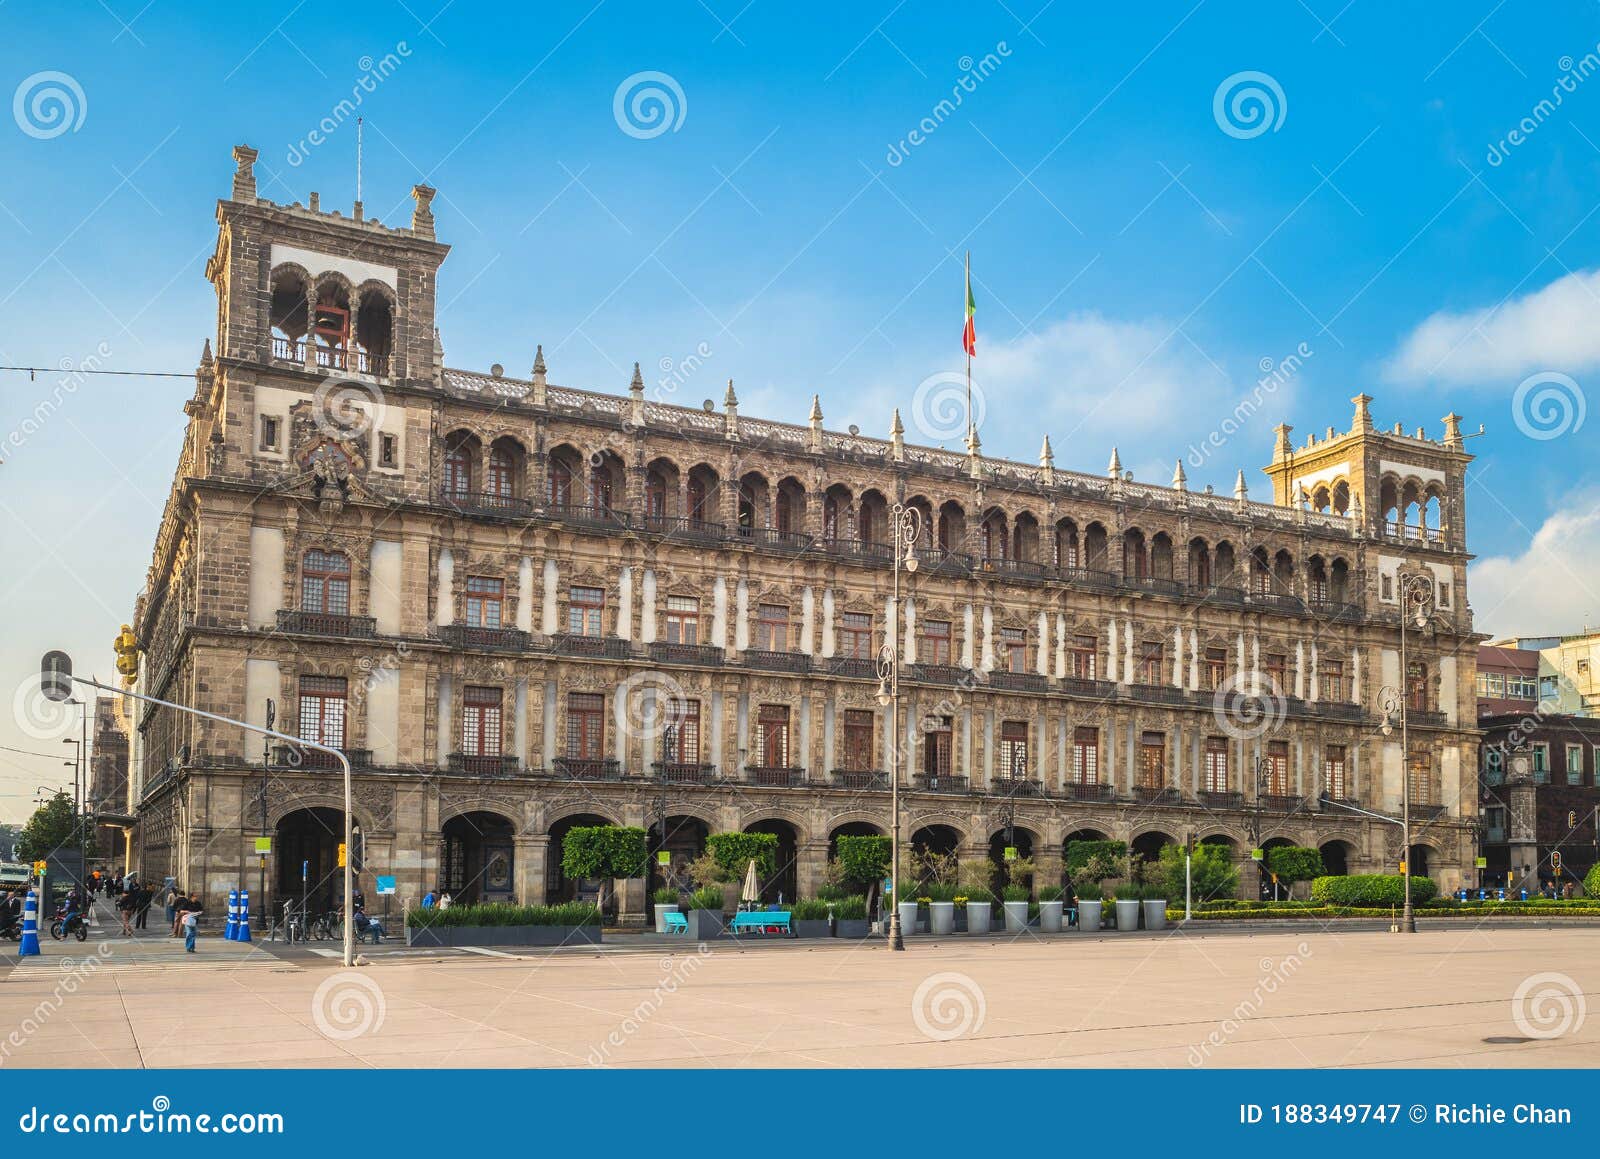 old city hall of mexico city near zocalo